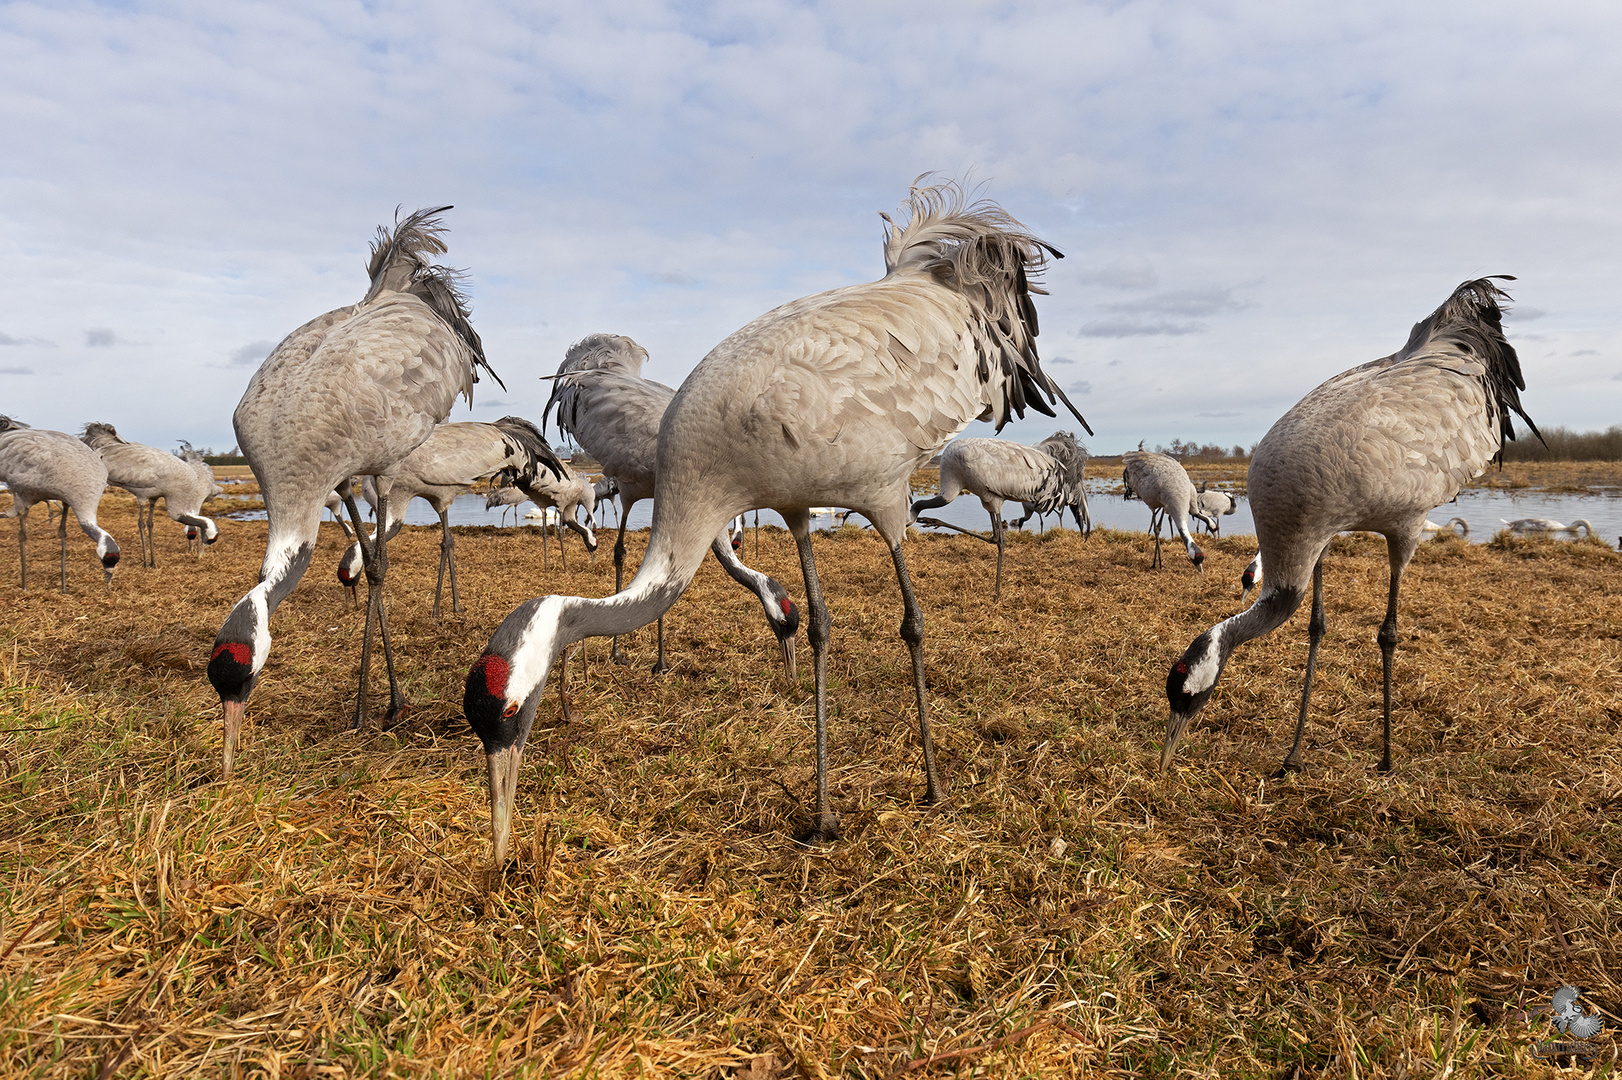 Common crane (Grus grus), Grauer Kranich, Hornborgasee, Schweden, Sweden